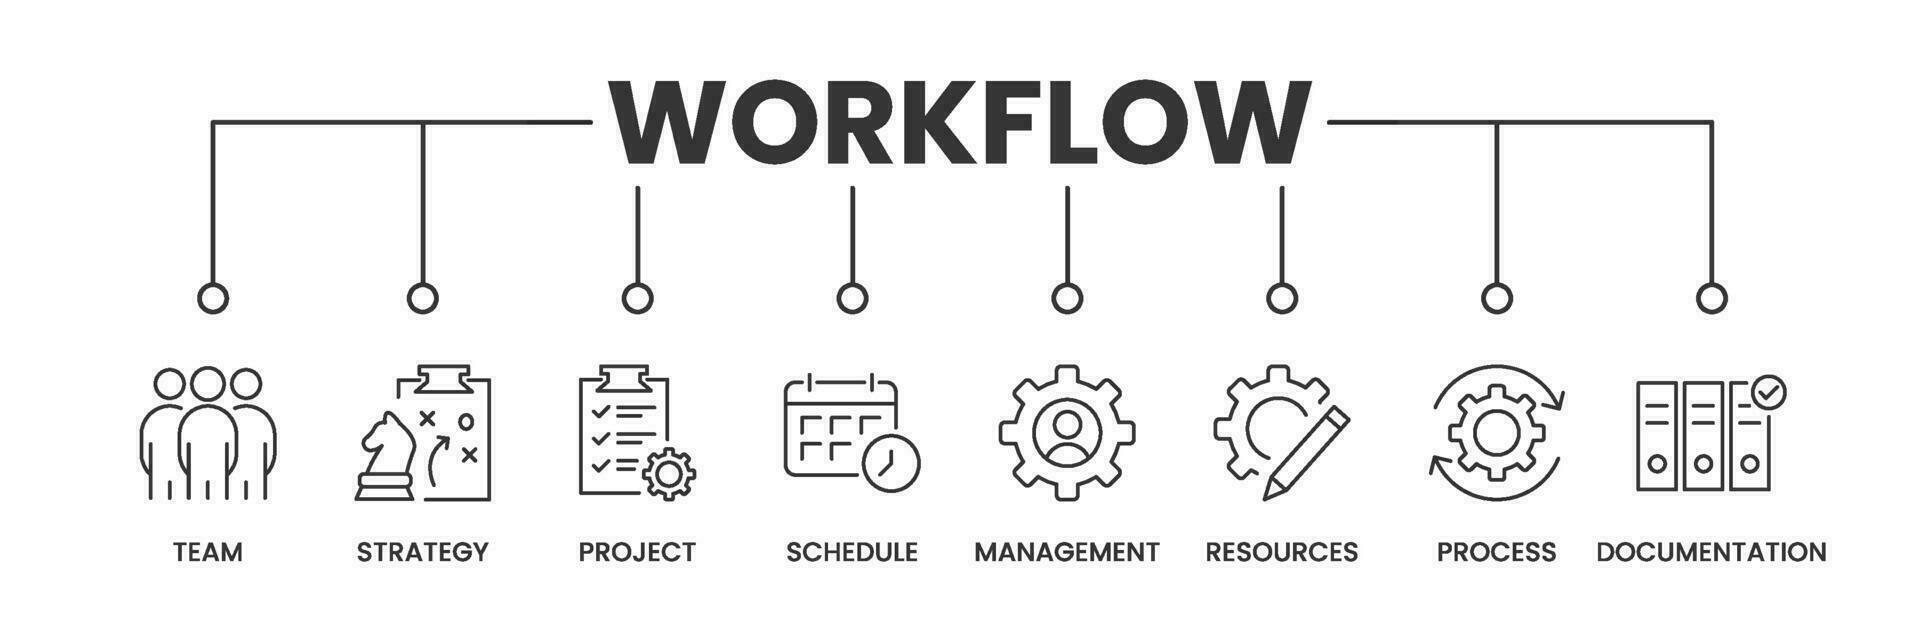 workflow banier met pictogrammen. schets pictogrammen van team, strategie, projecteren, schema, beheer, bronnen, werkwijze, documentatie. vector illustratie.